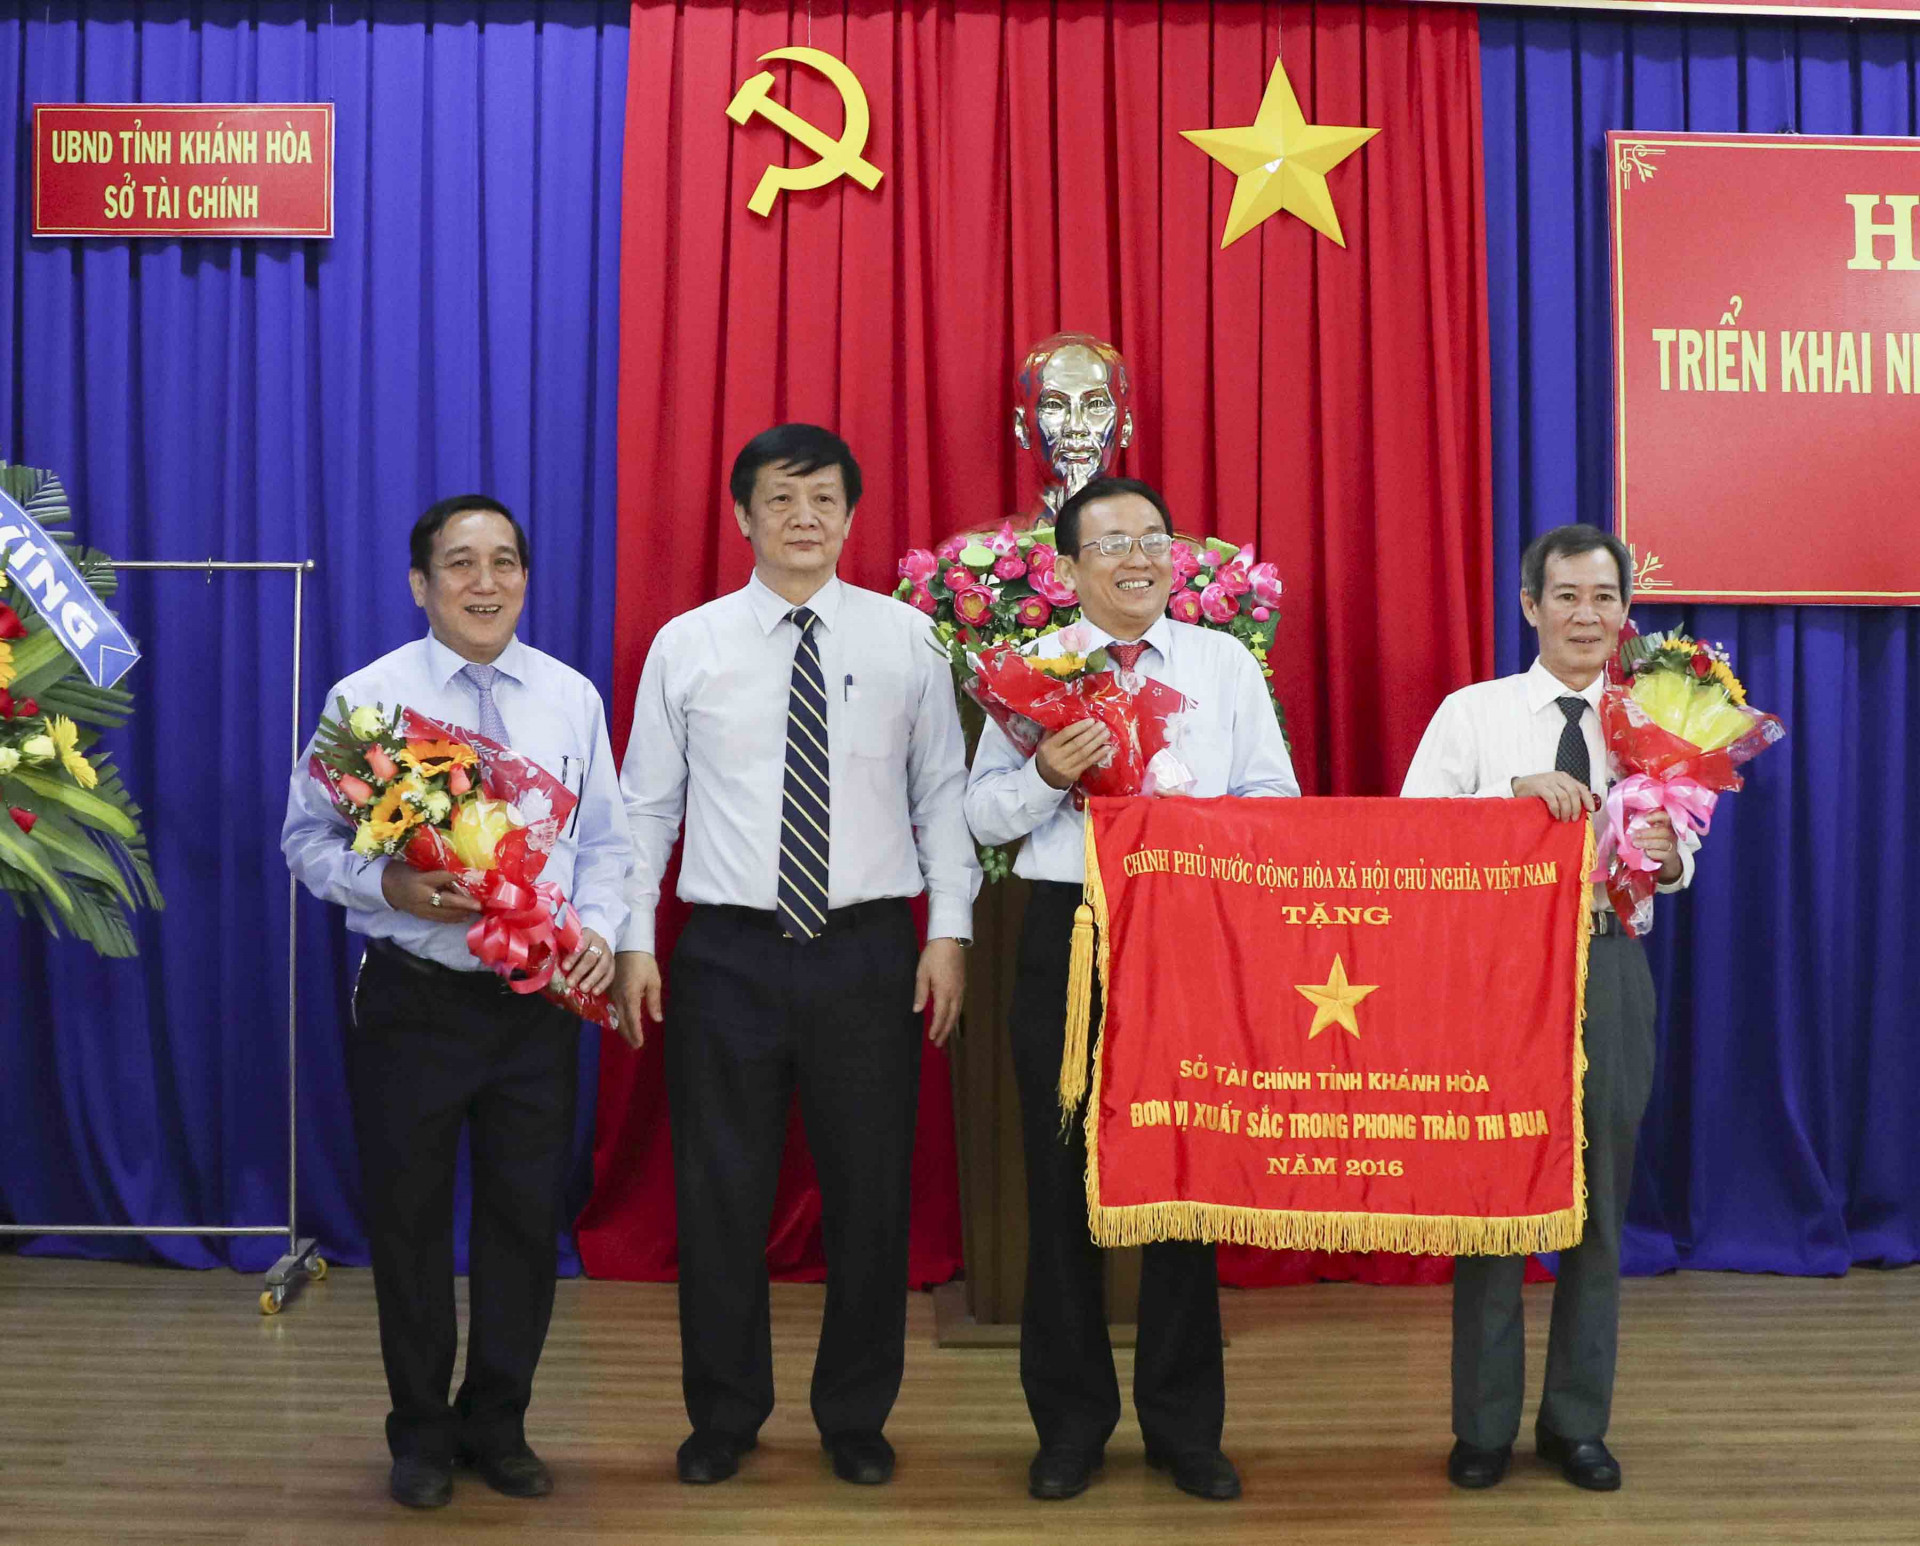 Được sự ủy quyền của Thủ tướng Chính phủ, ông Trần Sơn Hải trao cờ thi đua của Chính phủ cho Sở Tài chính.